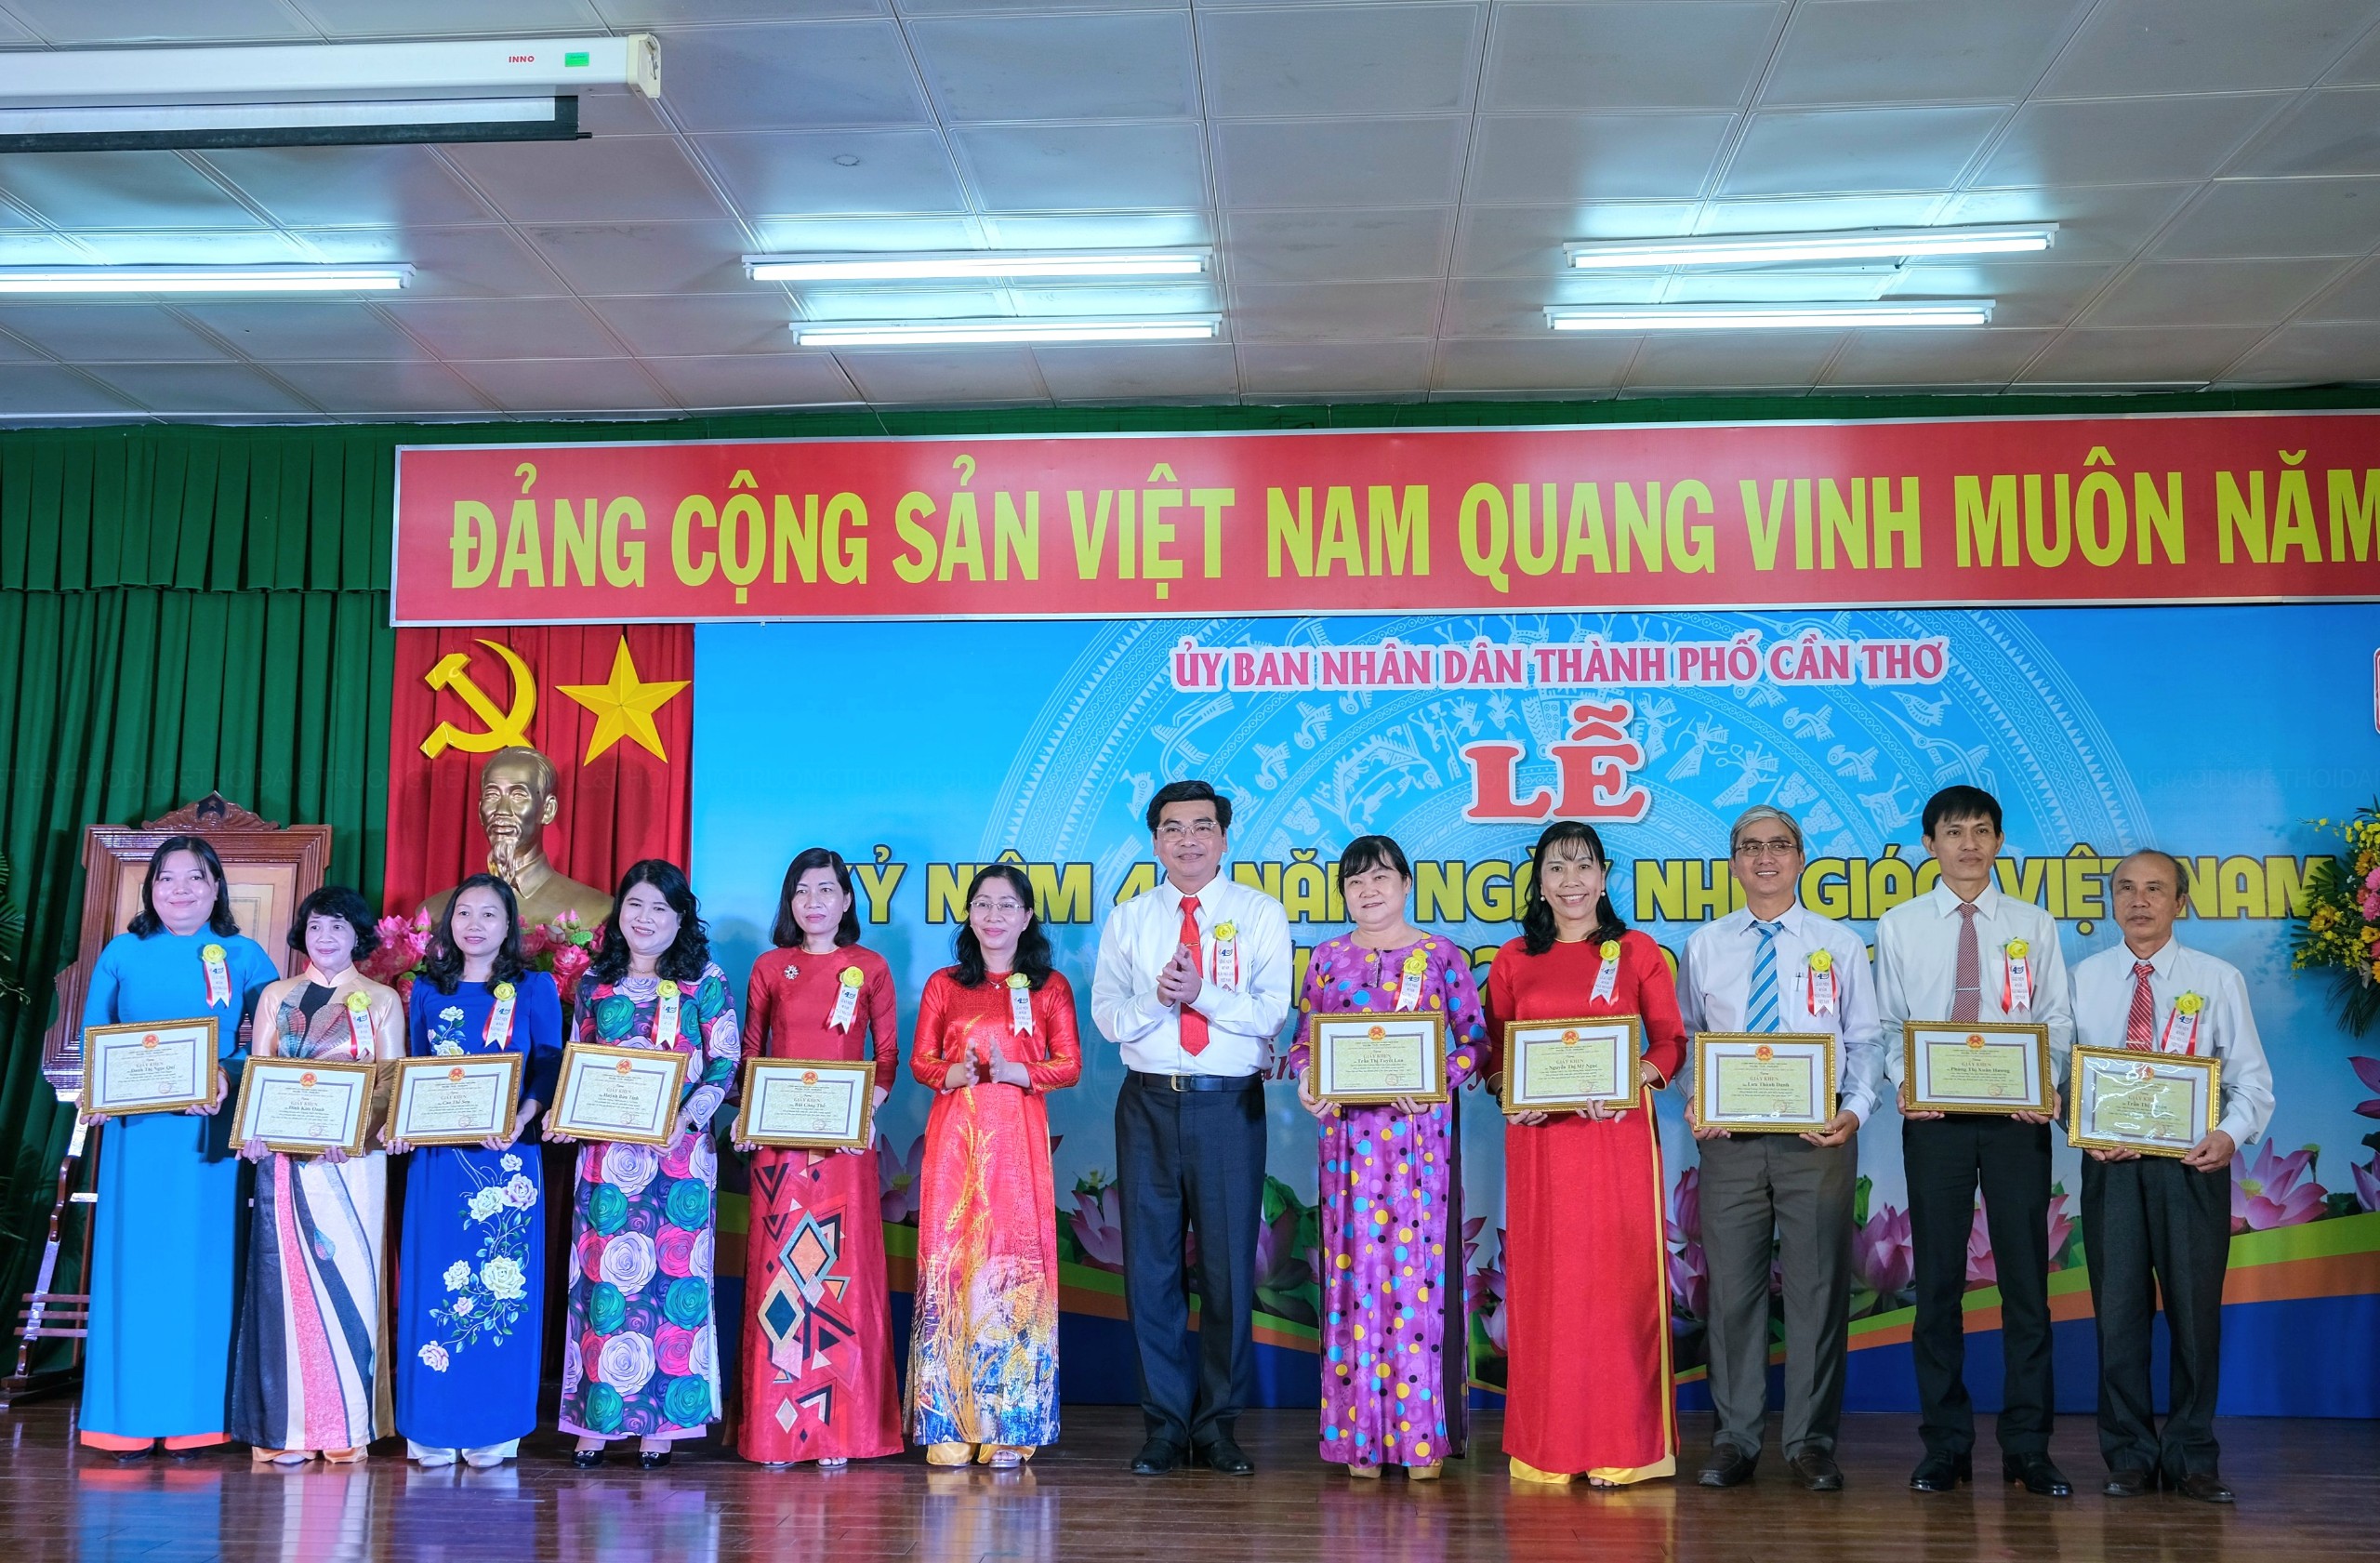 Ông Trần Thanh Bình – Giám đốc Sở Giáo dục và Đào tạo TP Cần Thơ tặng giấy khen cho các cá nhân xuất sắc.